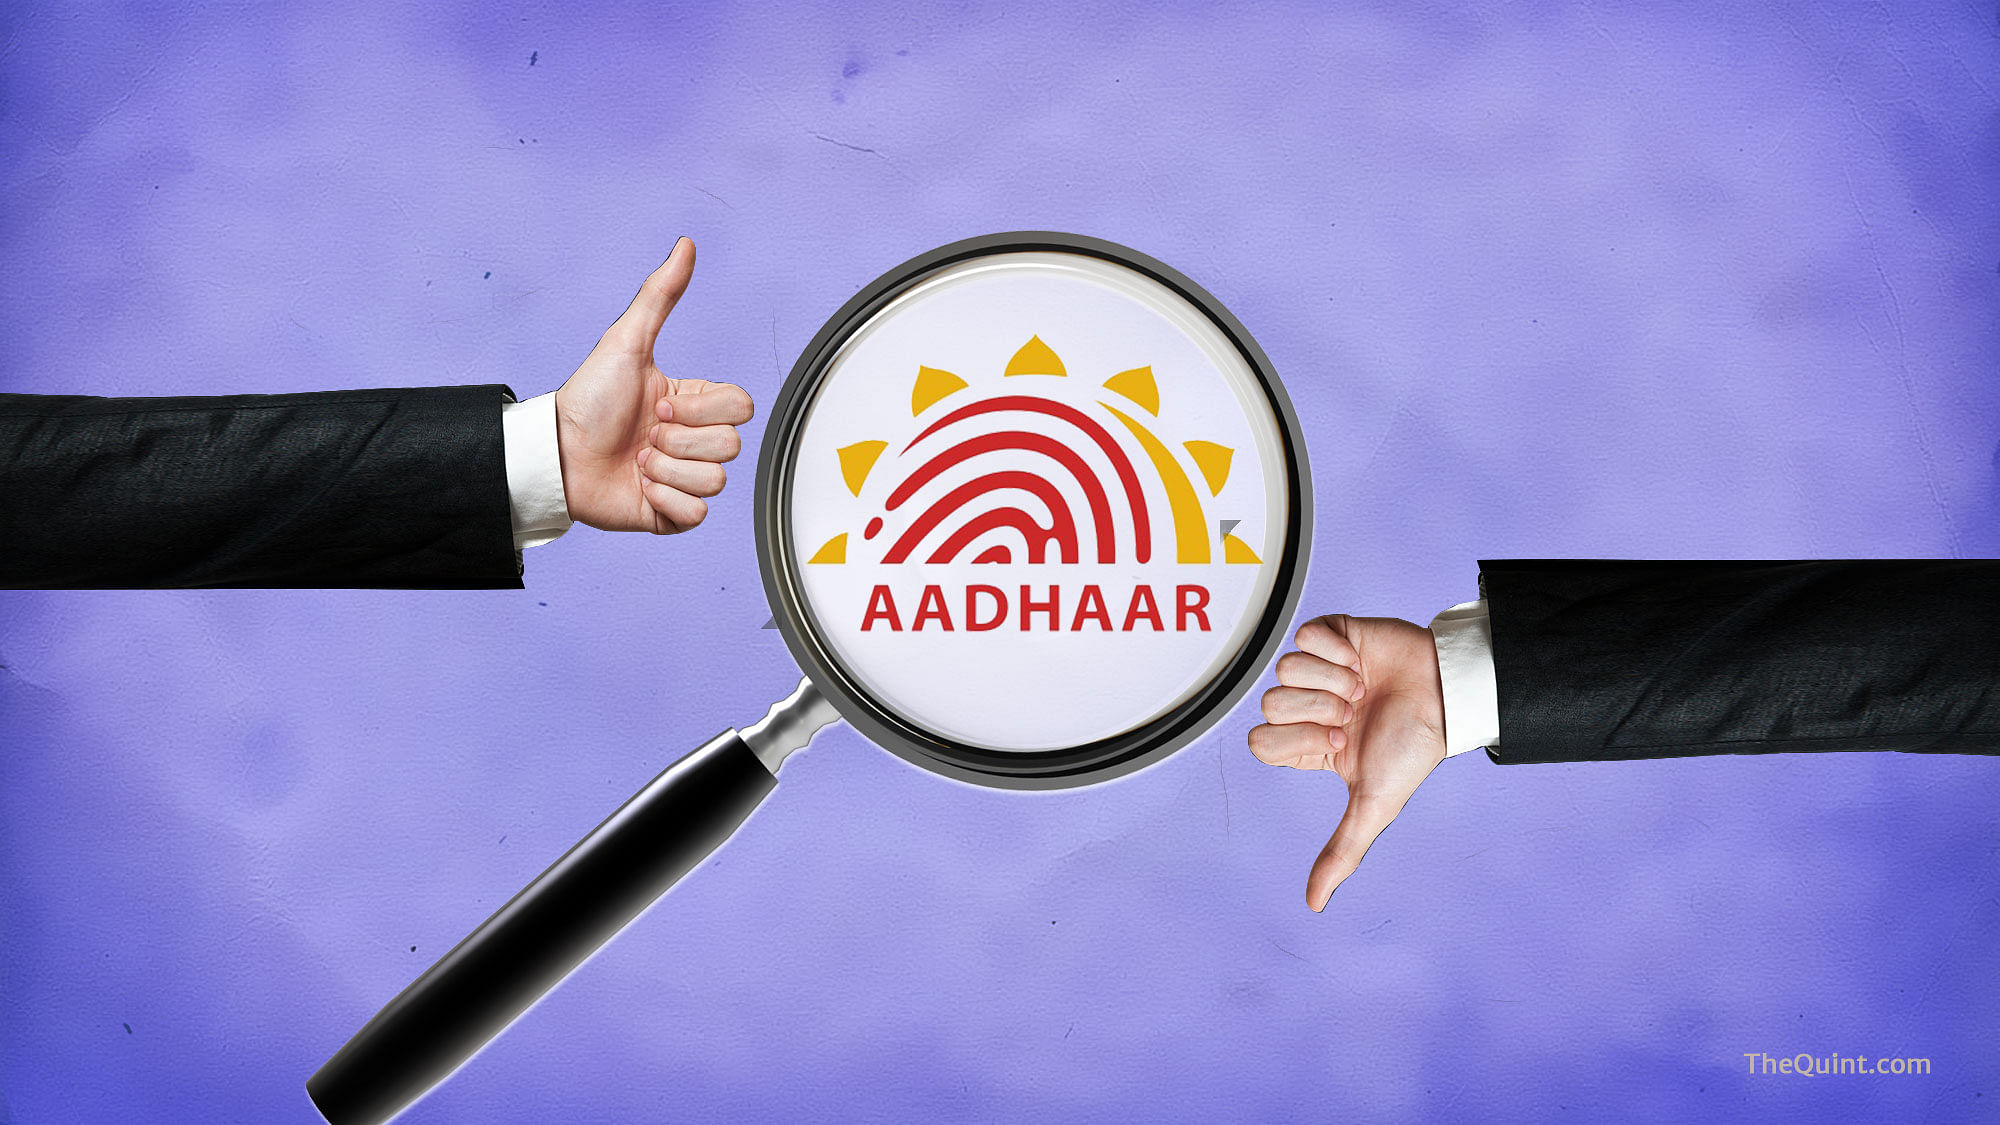 Aadhaar comes under the jurisdiction of UIDAI. 